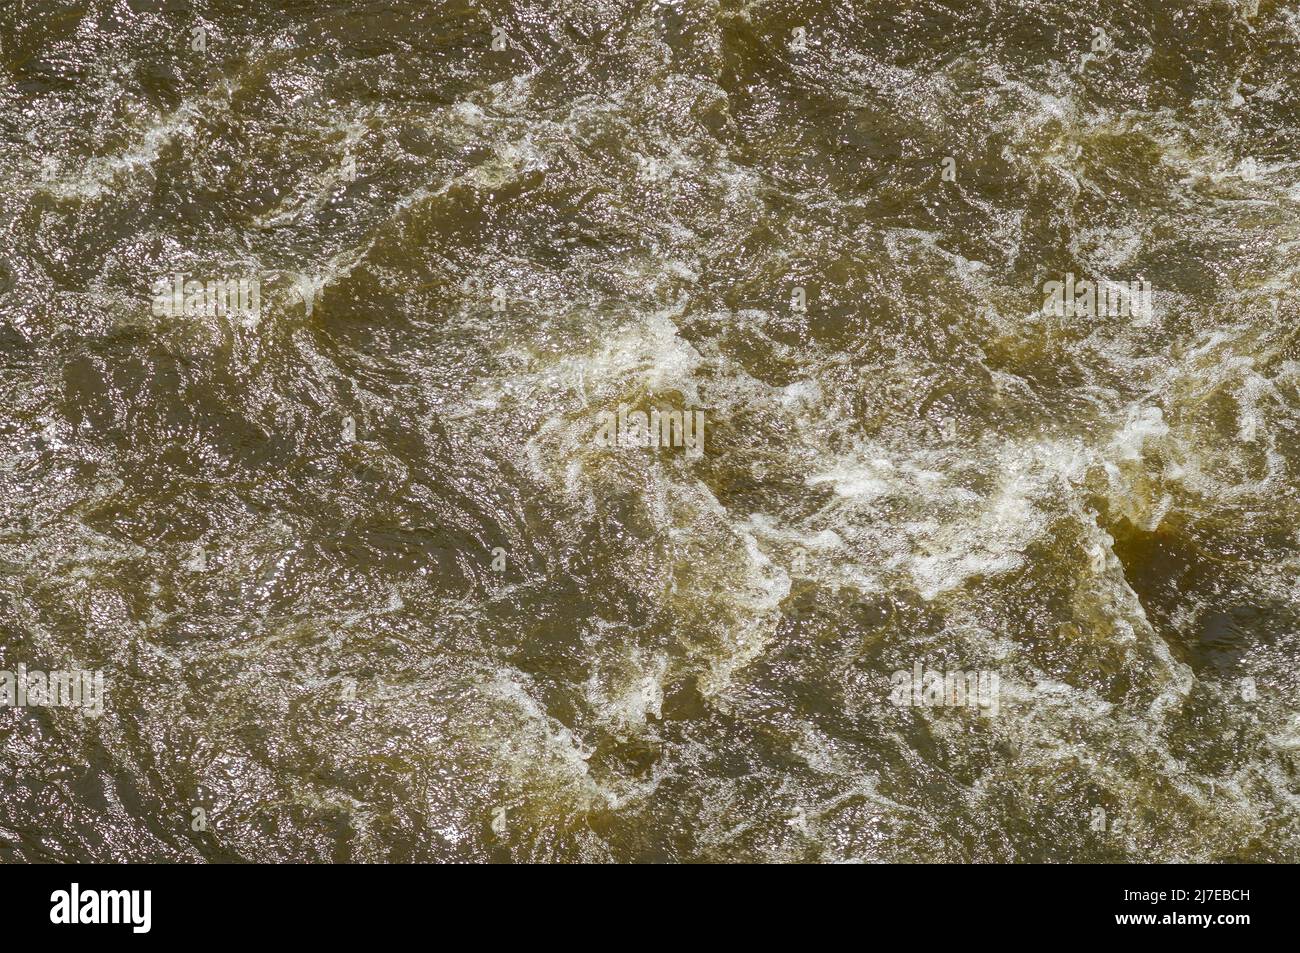 La forte corrente d'acqua dorata del Rio dos Mortos vide dall'alto a Tiradentes, Minas Gerais - Brasile. Foto Stock